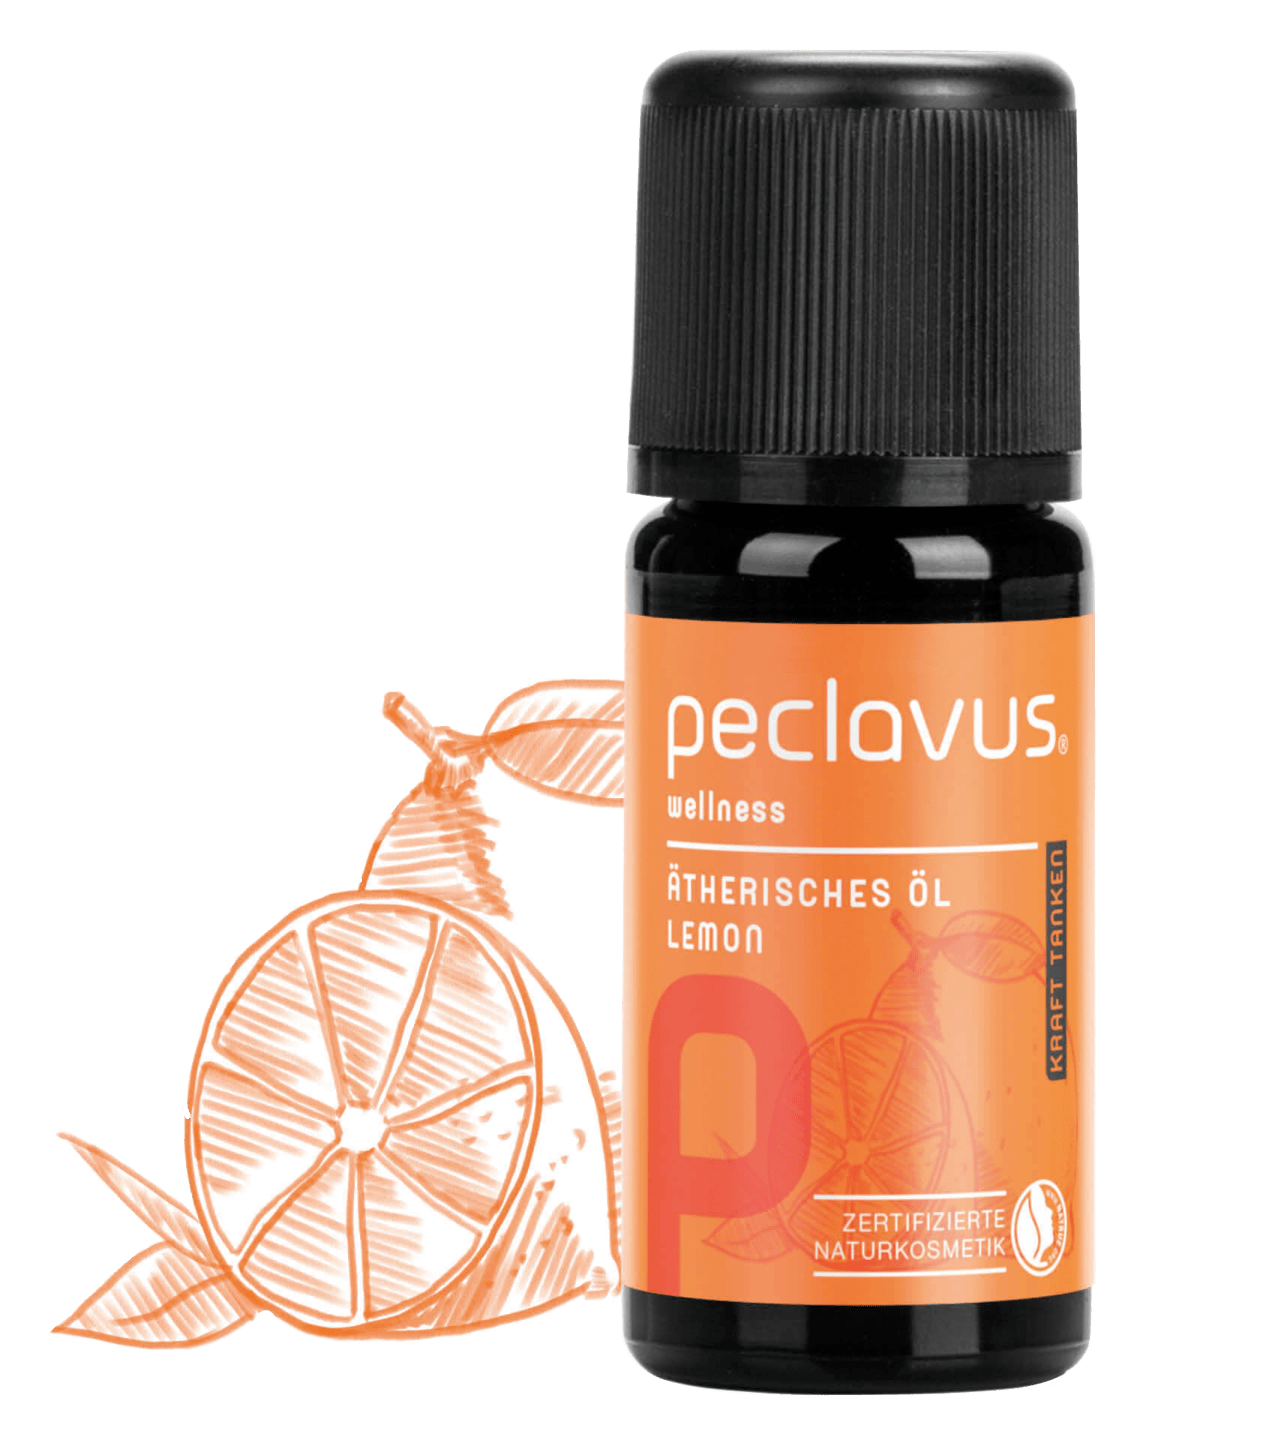 peclavus - Ätherisches Öl Lemon, 10 ml